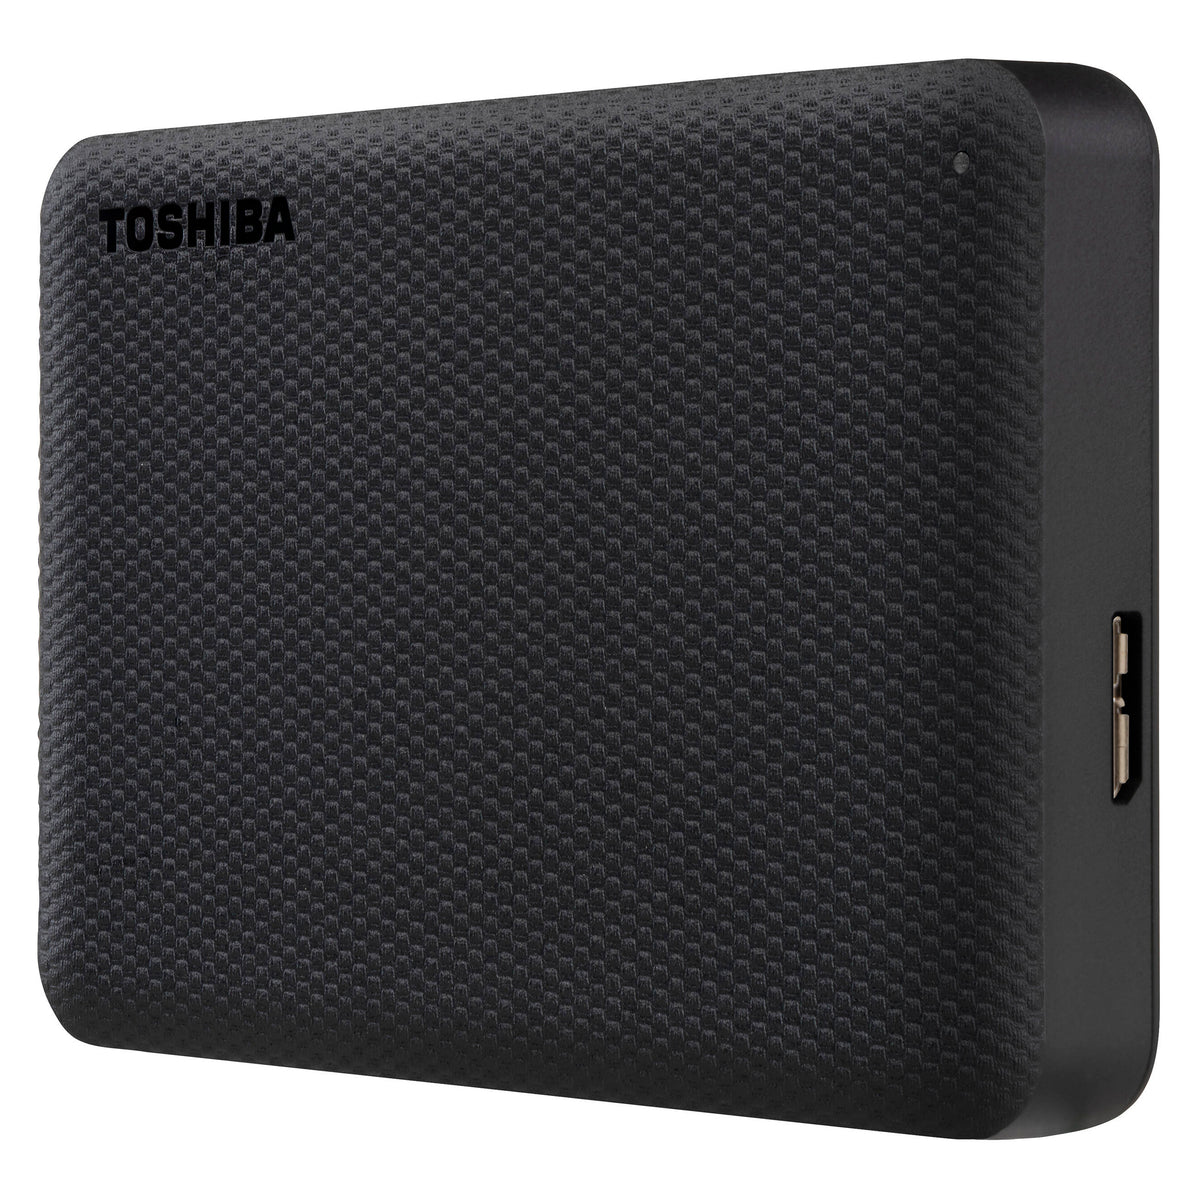 Disco Duro Toshiba Canvio Advance V10 | Externo | 2TB | Color Negro